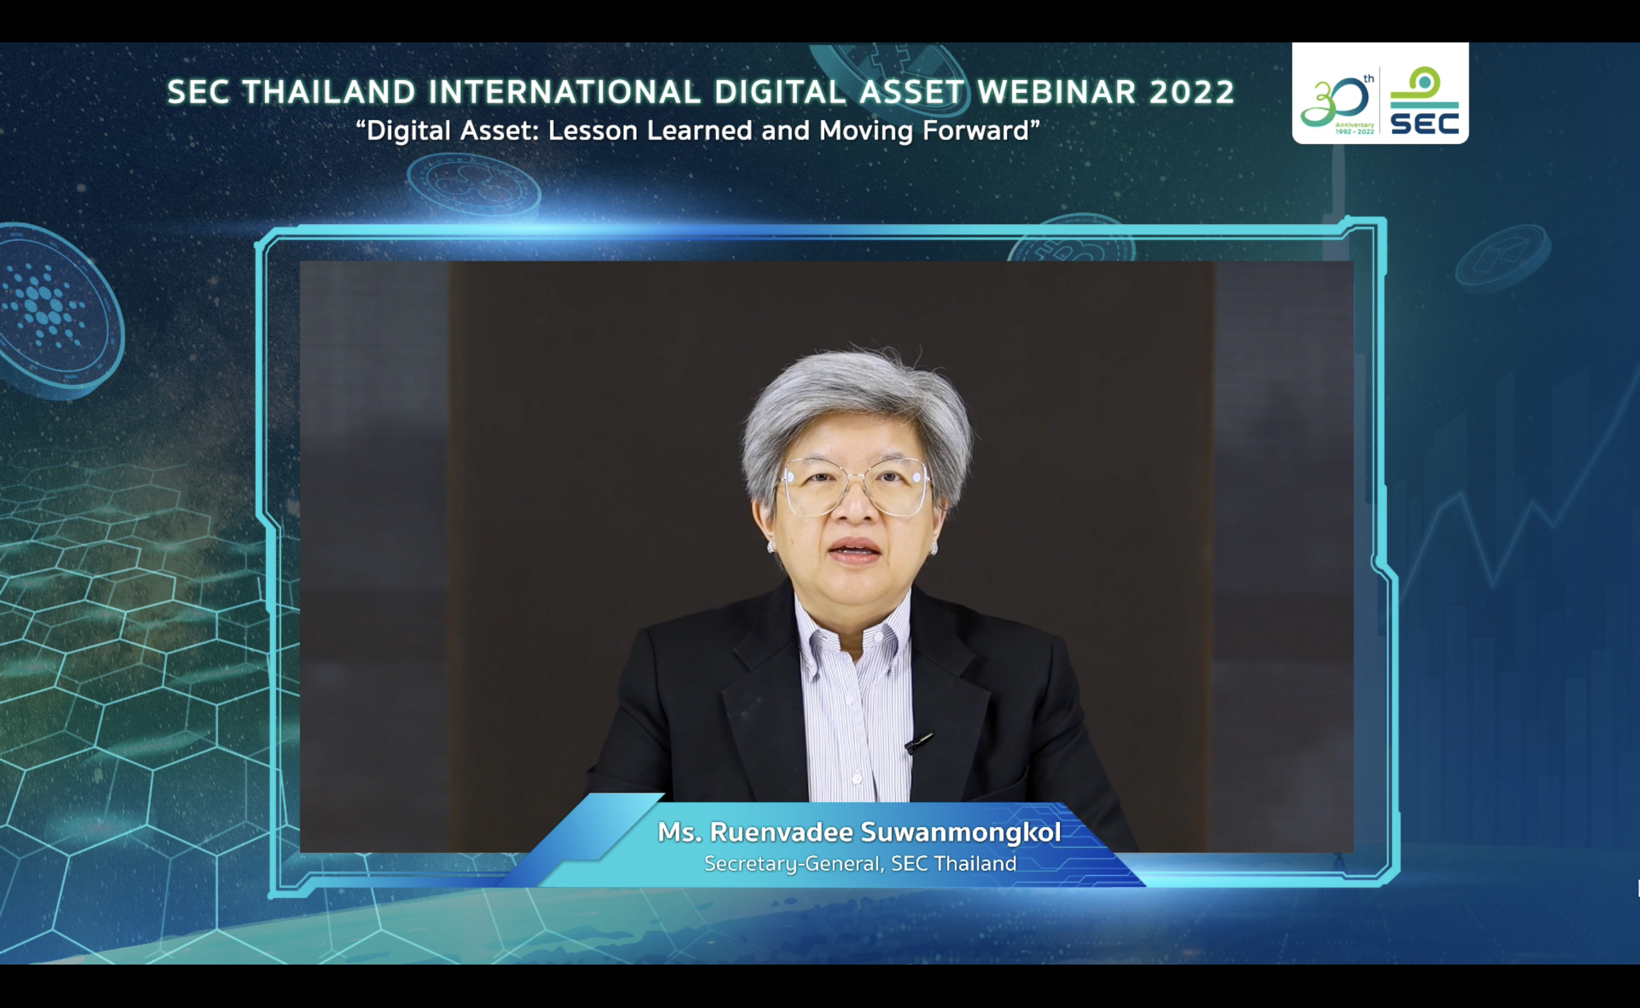 ก.ล.ต. เผยผลการจัดงานเสวนาออนไลน์ SEC Thailand International Digital Asset Webinar 2022